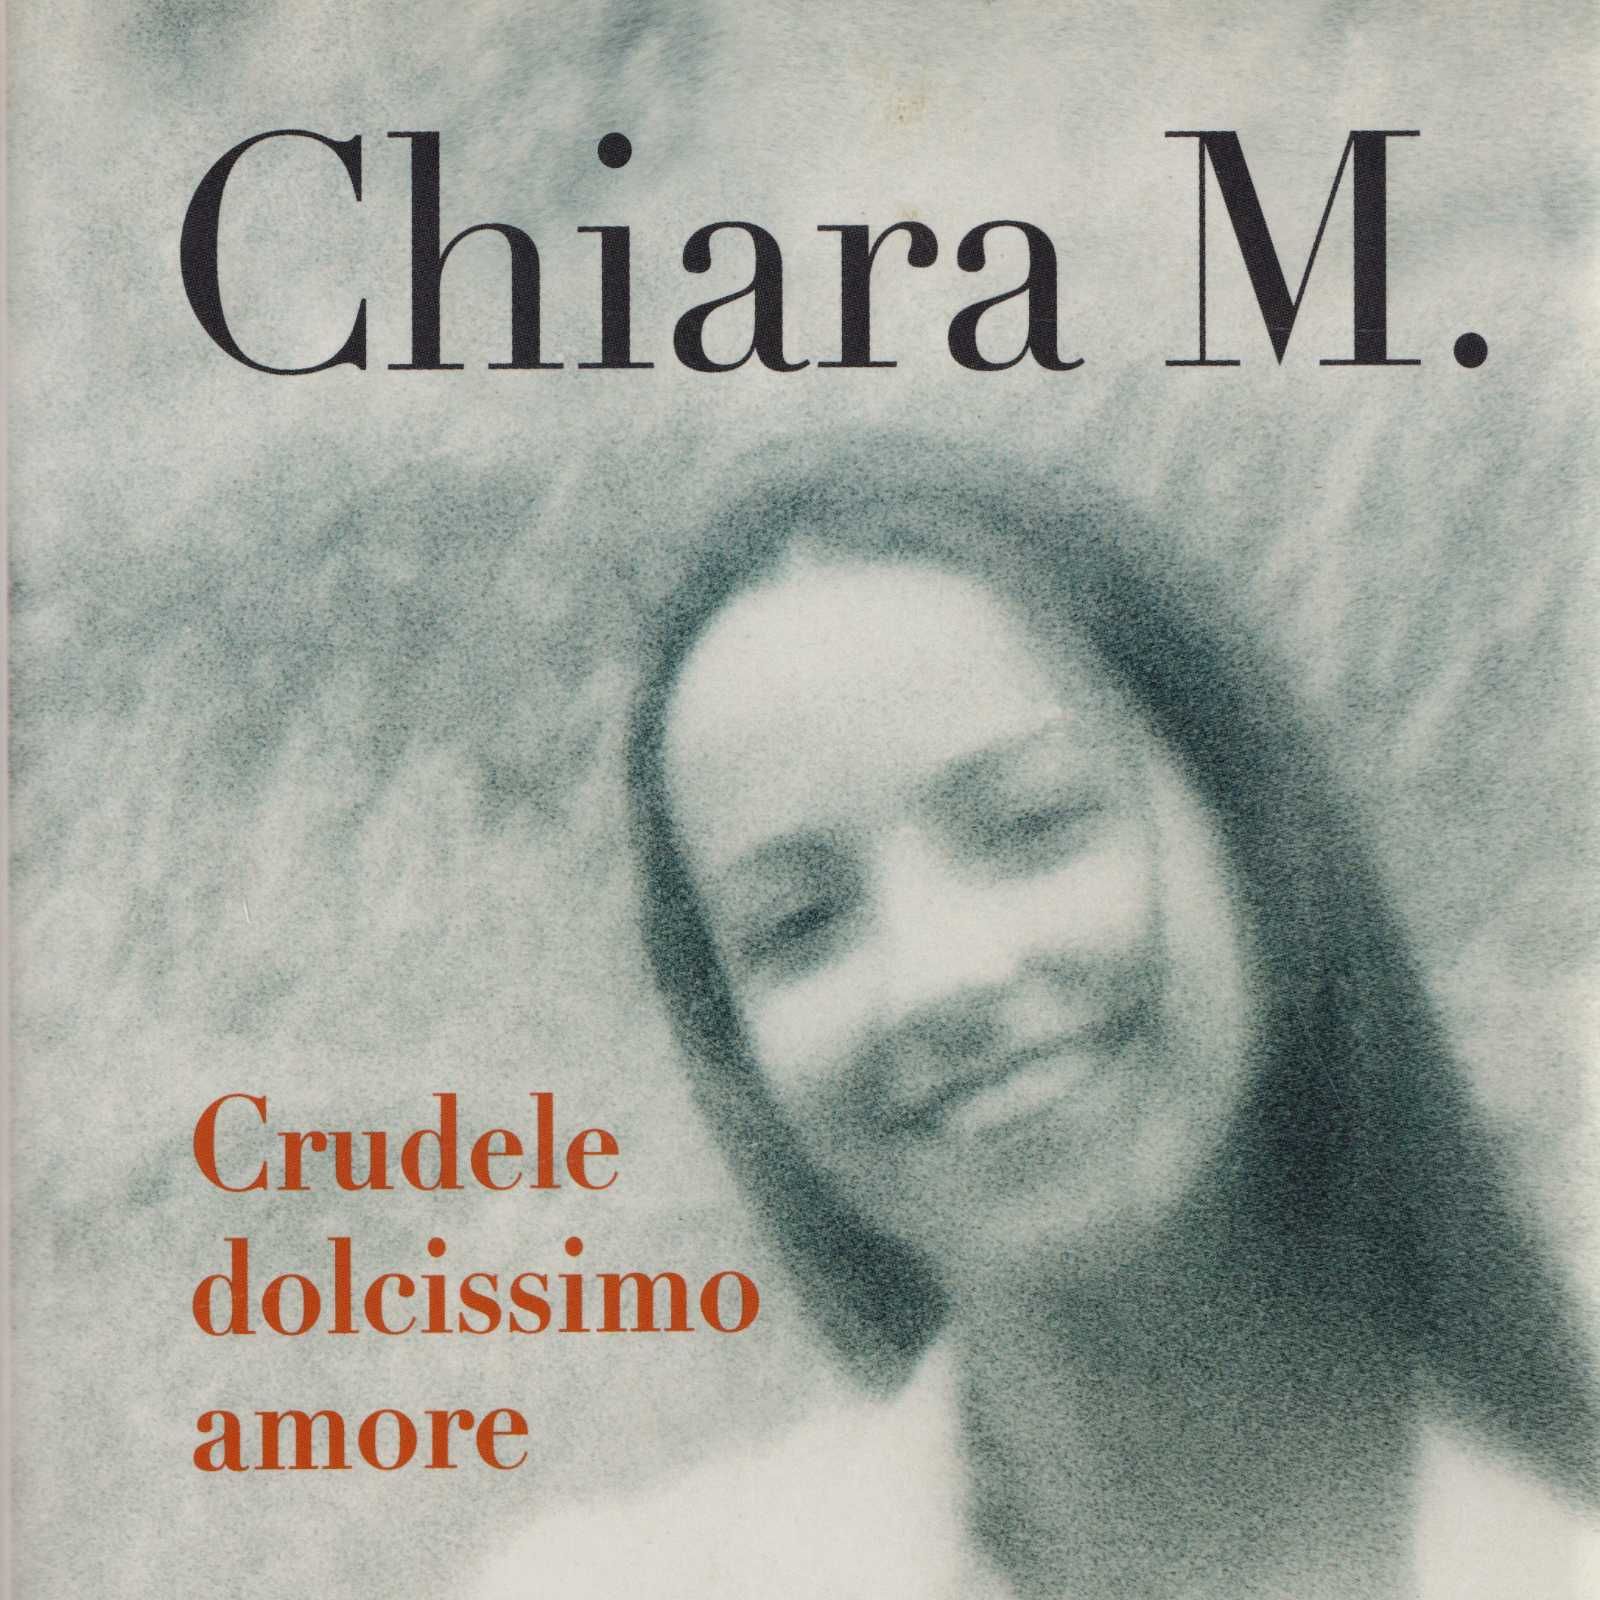 Chiara M. CRUDELE DOLCISSIMO AMORE SanPaolo Luglio 2005 cop.rigida